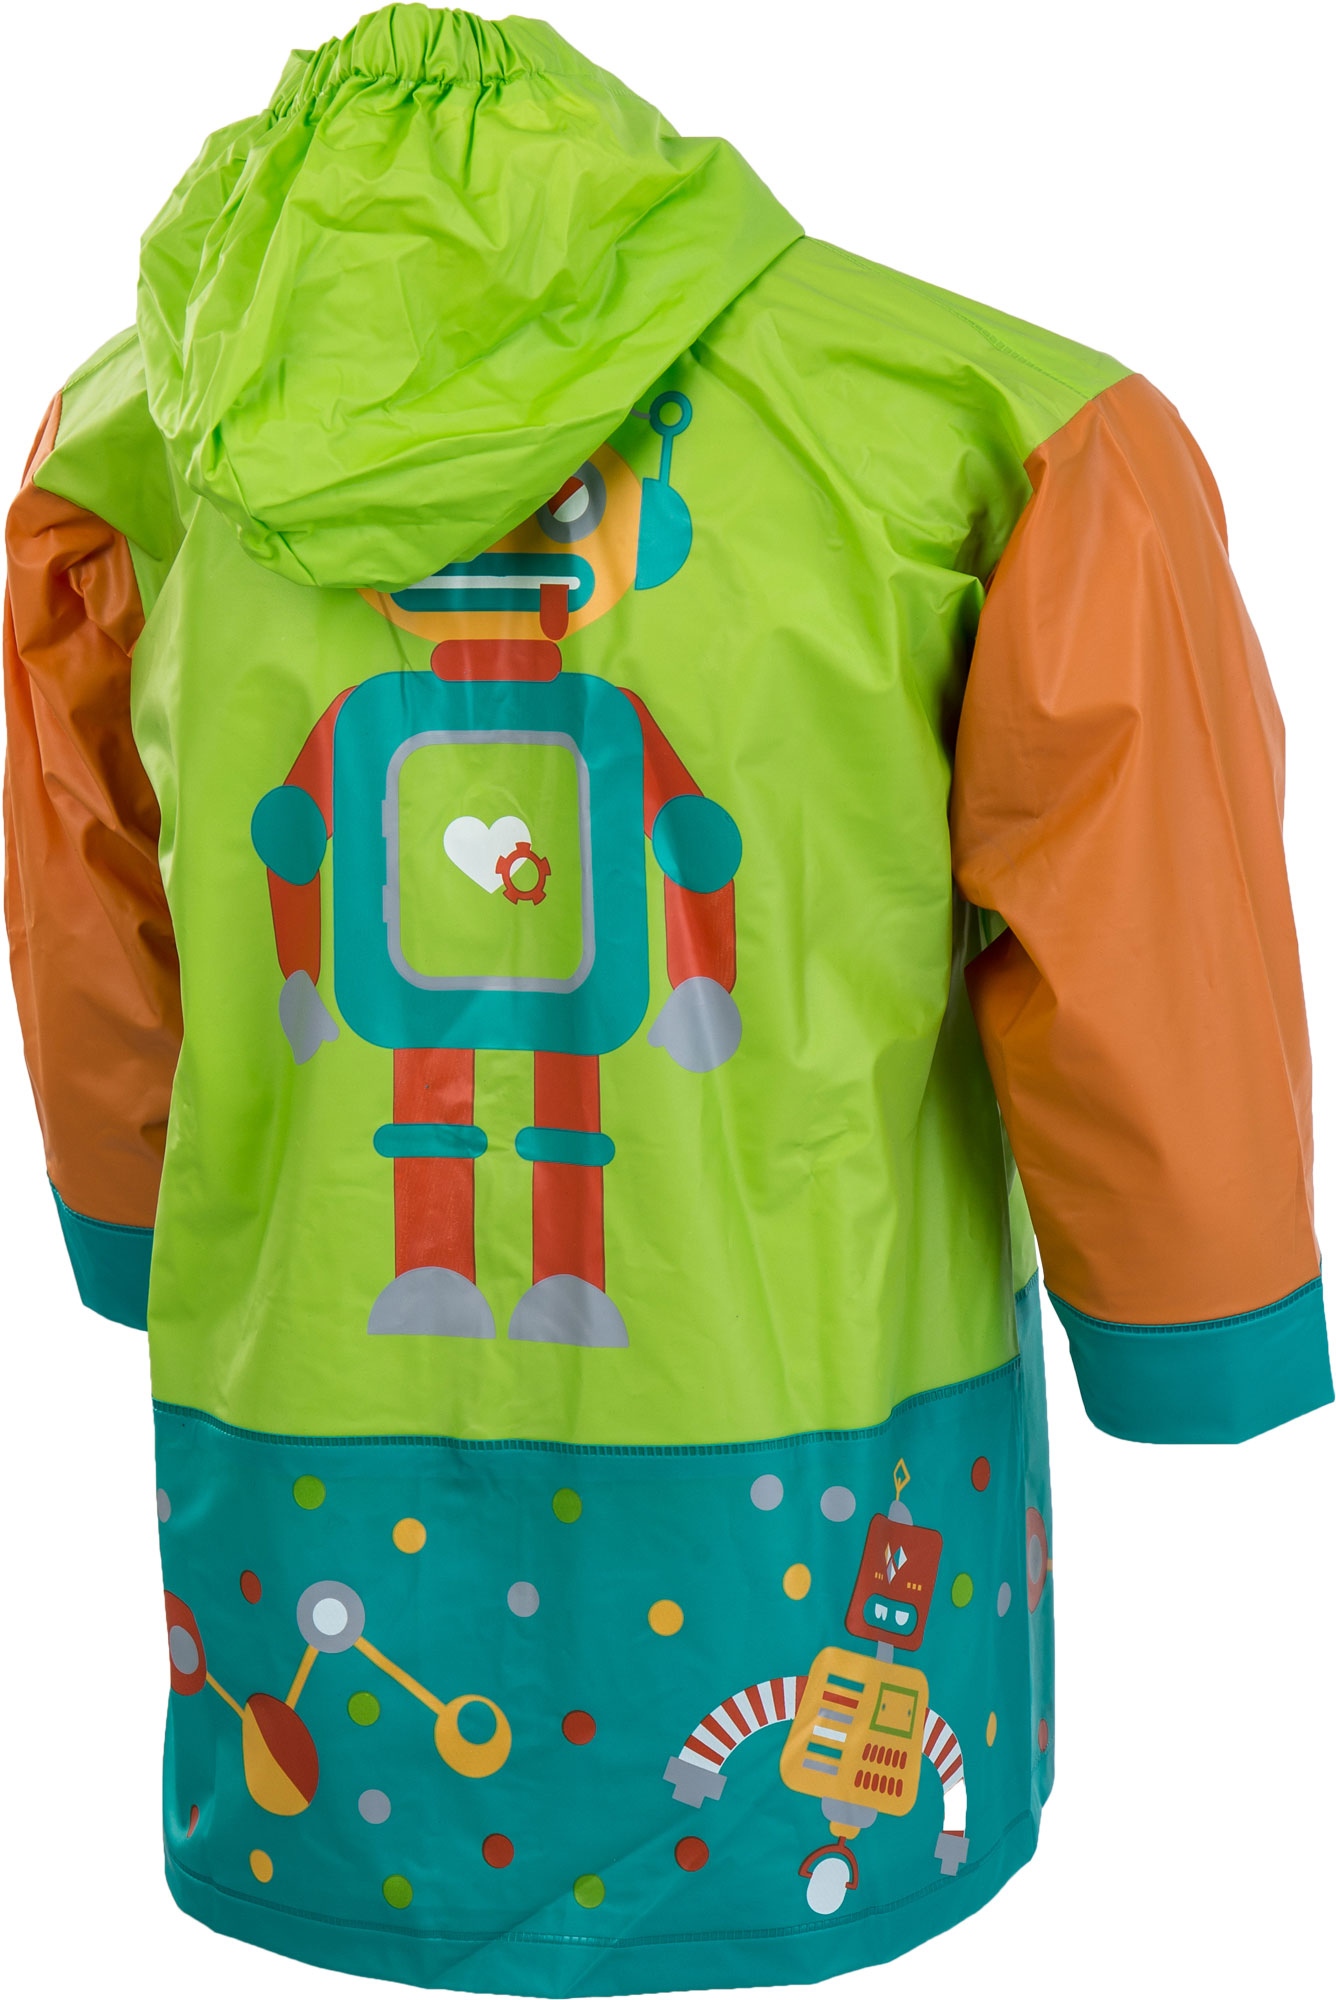 Kids’ raincoat